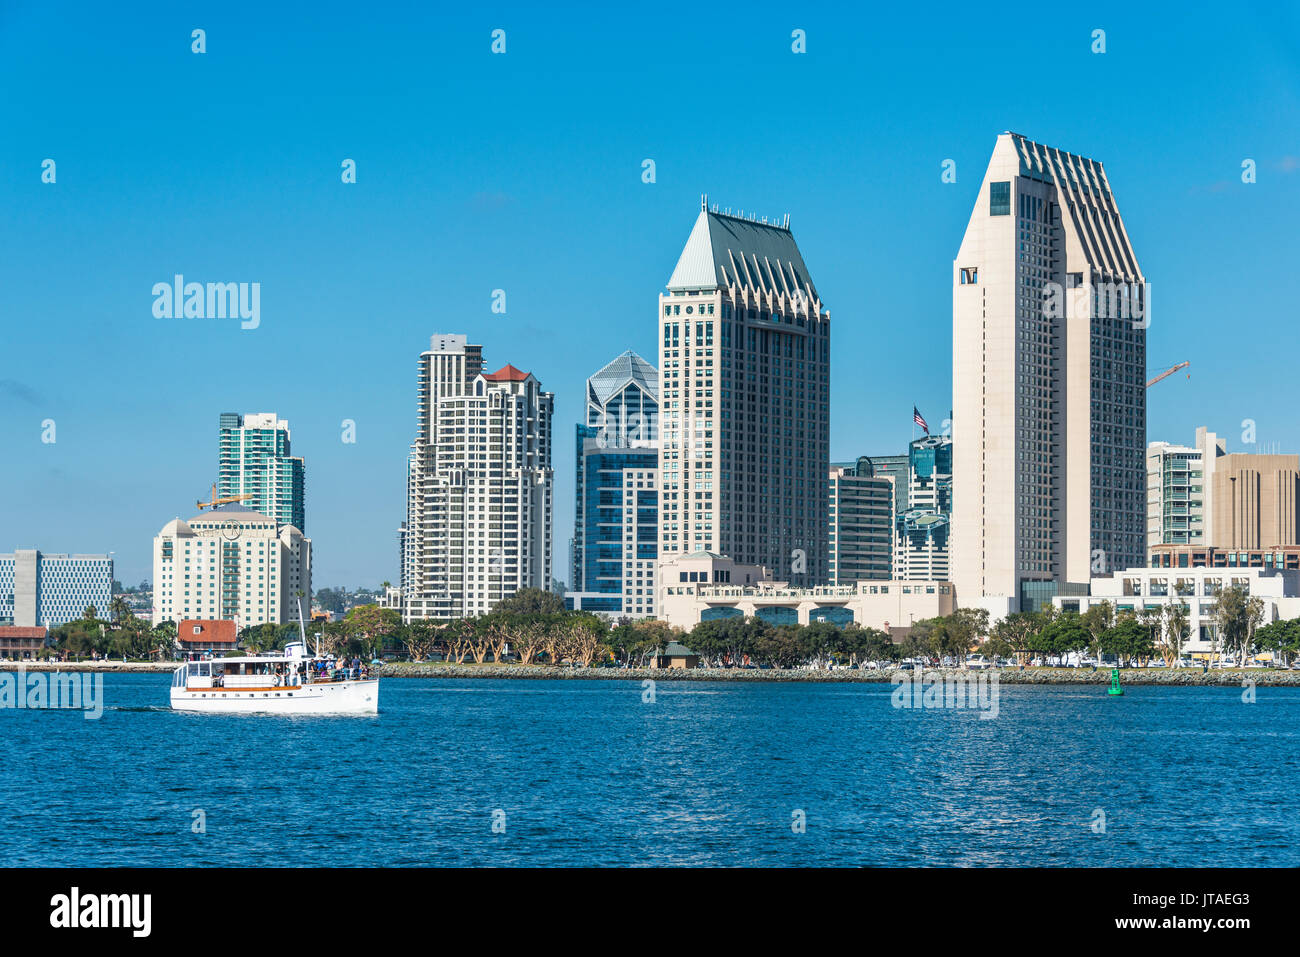 Kleine touristische Kreuzfahrtschiff mit der Skyline im Hintergrund, Hafen von San Diego, Kalifornien, USA, Nordamerika Stockfoto